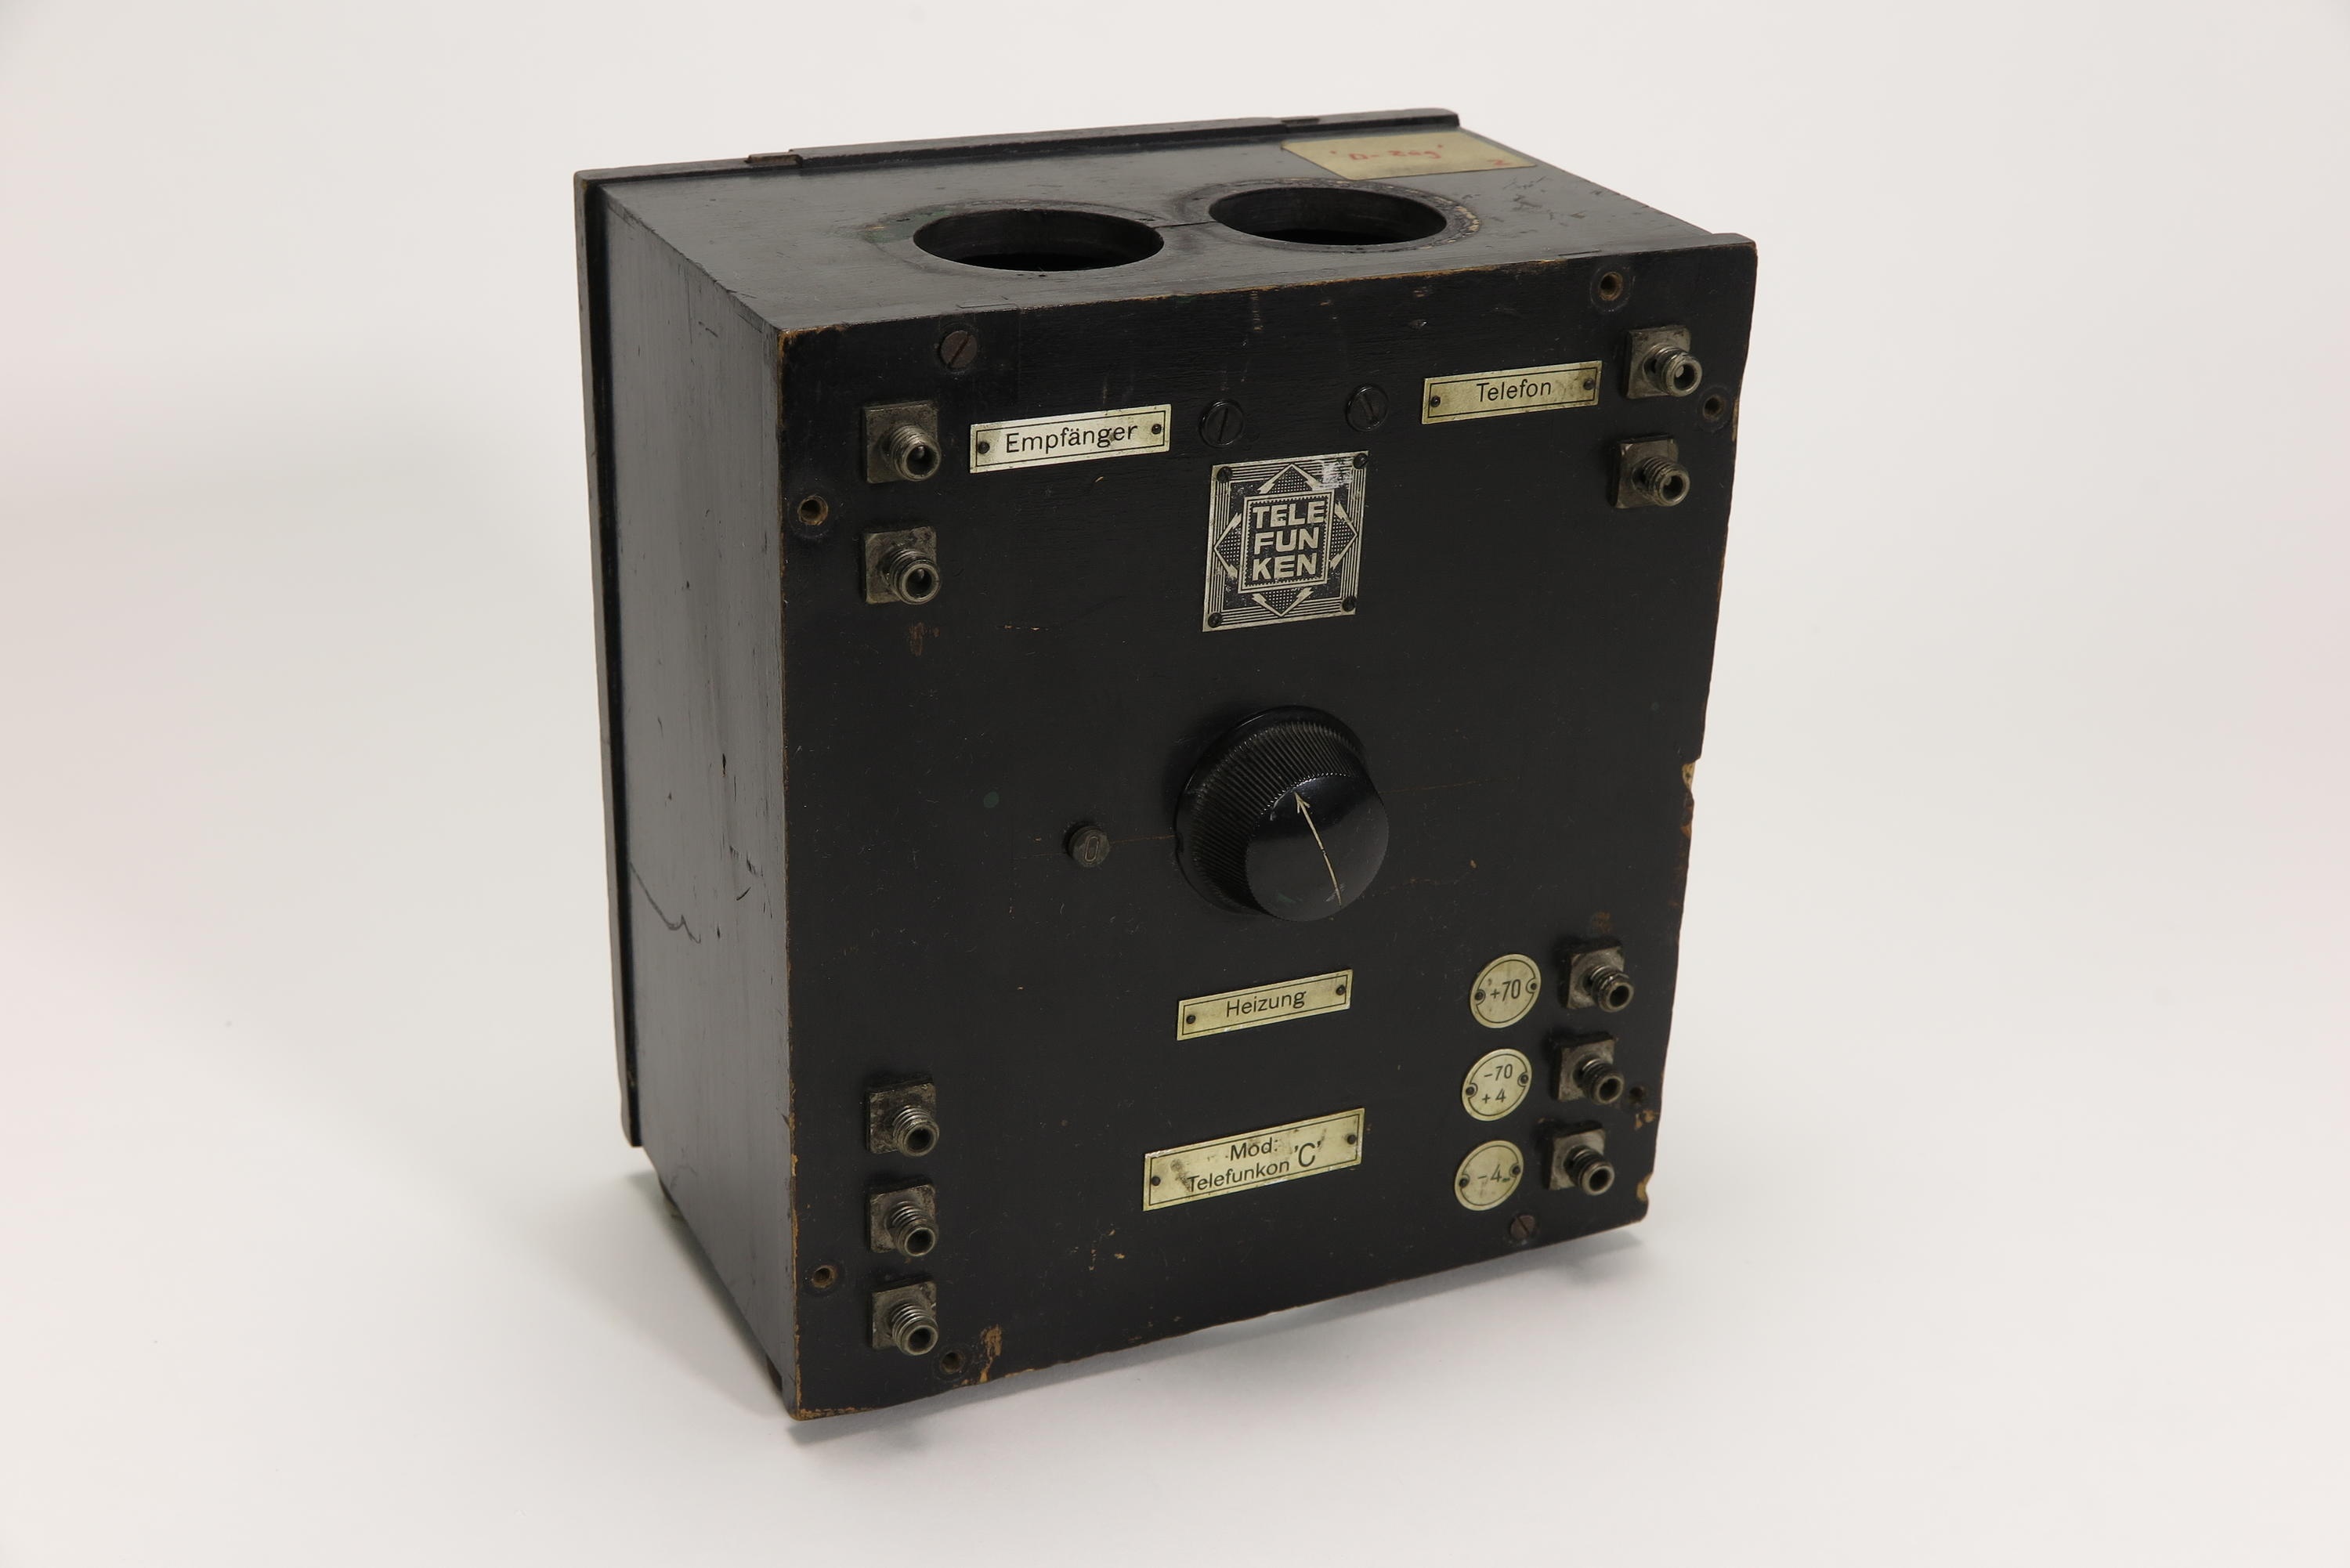 Niederfrequenzverstärker Telefunken Telefunkon C (Deutsches Technikmuseum CC BY)